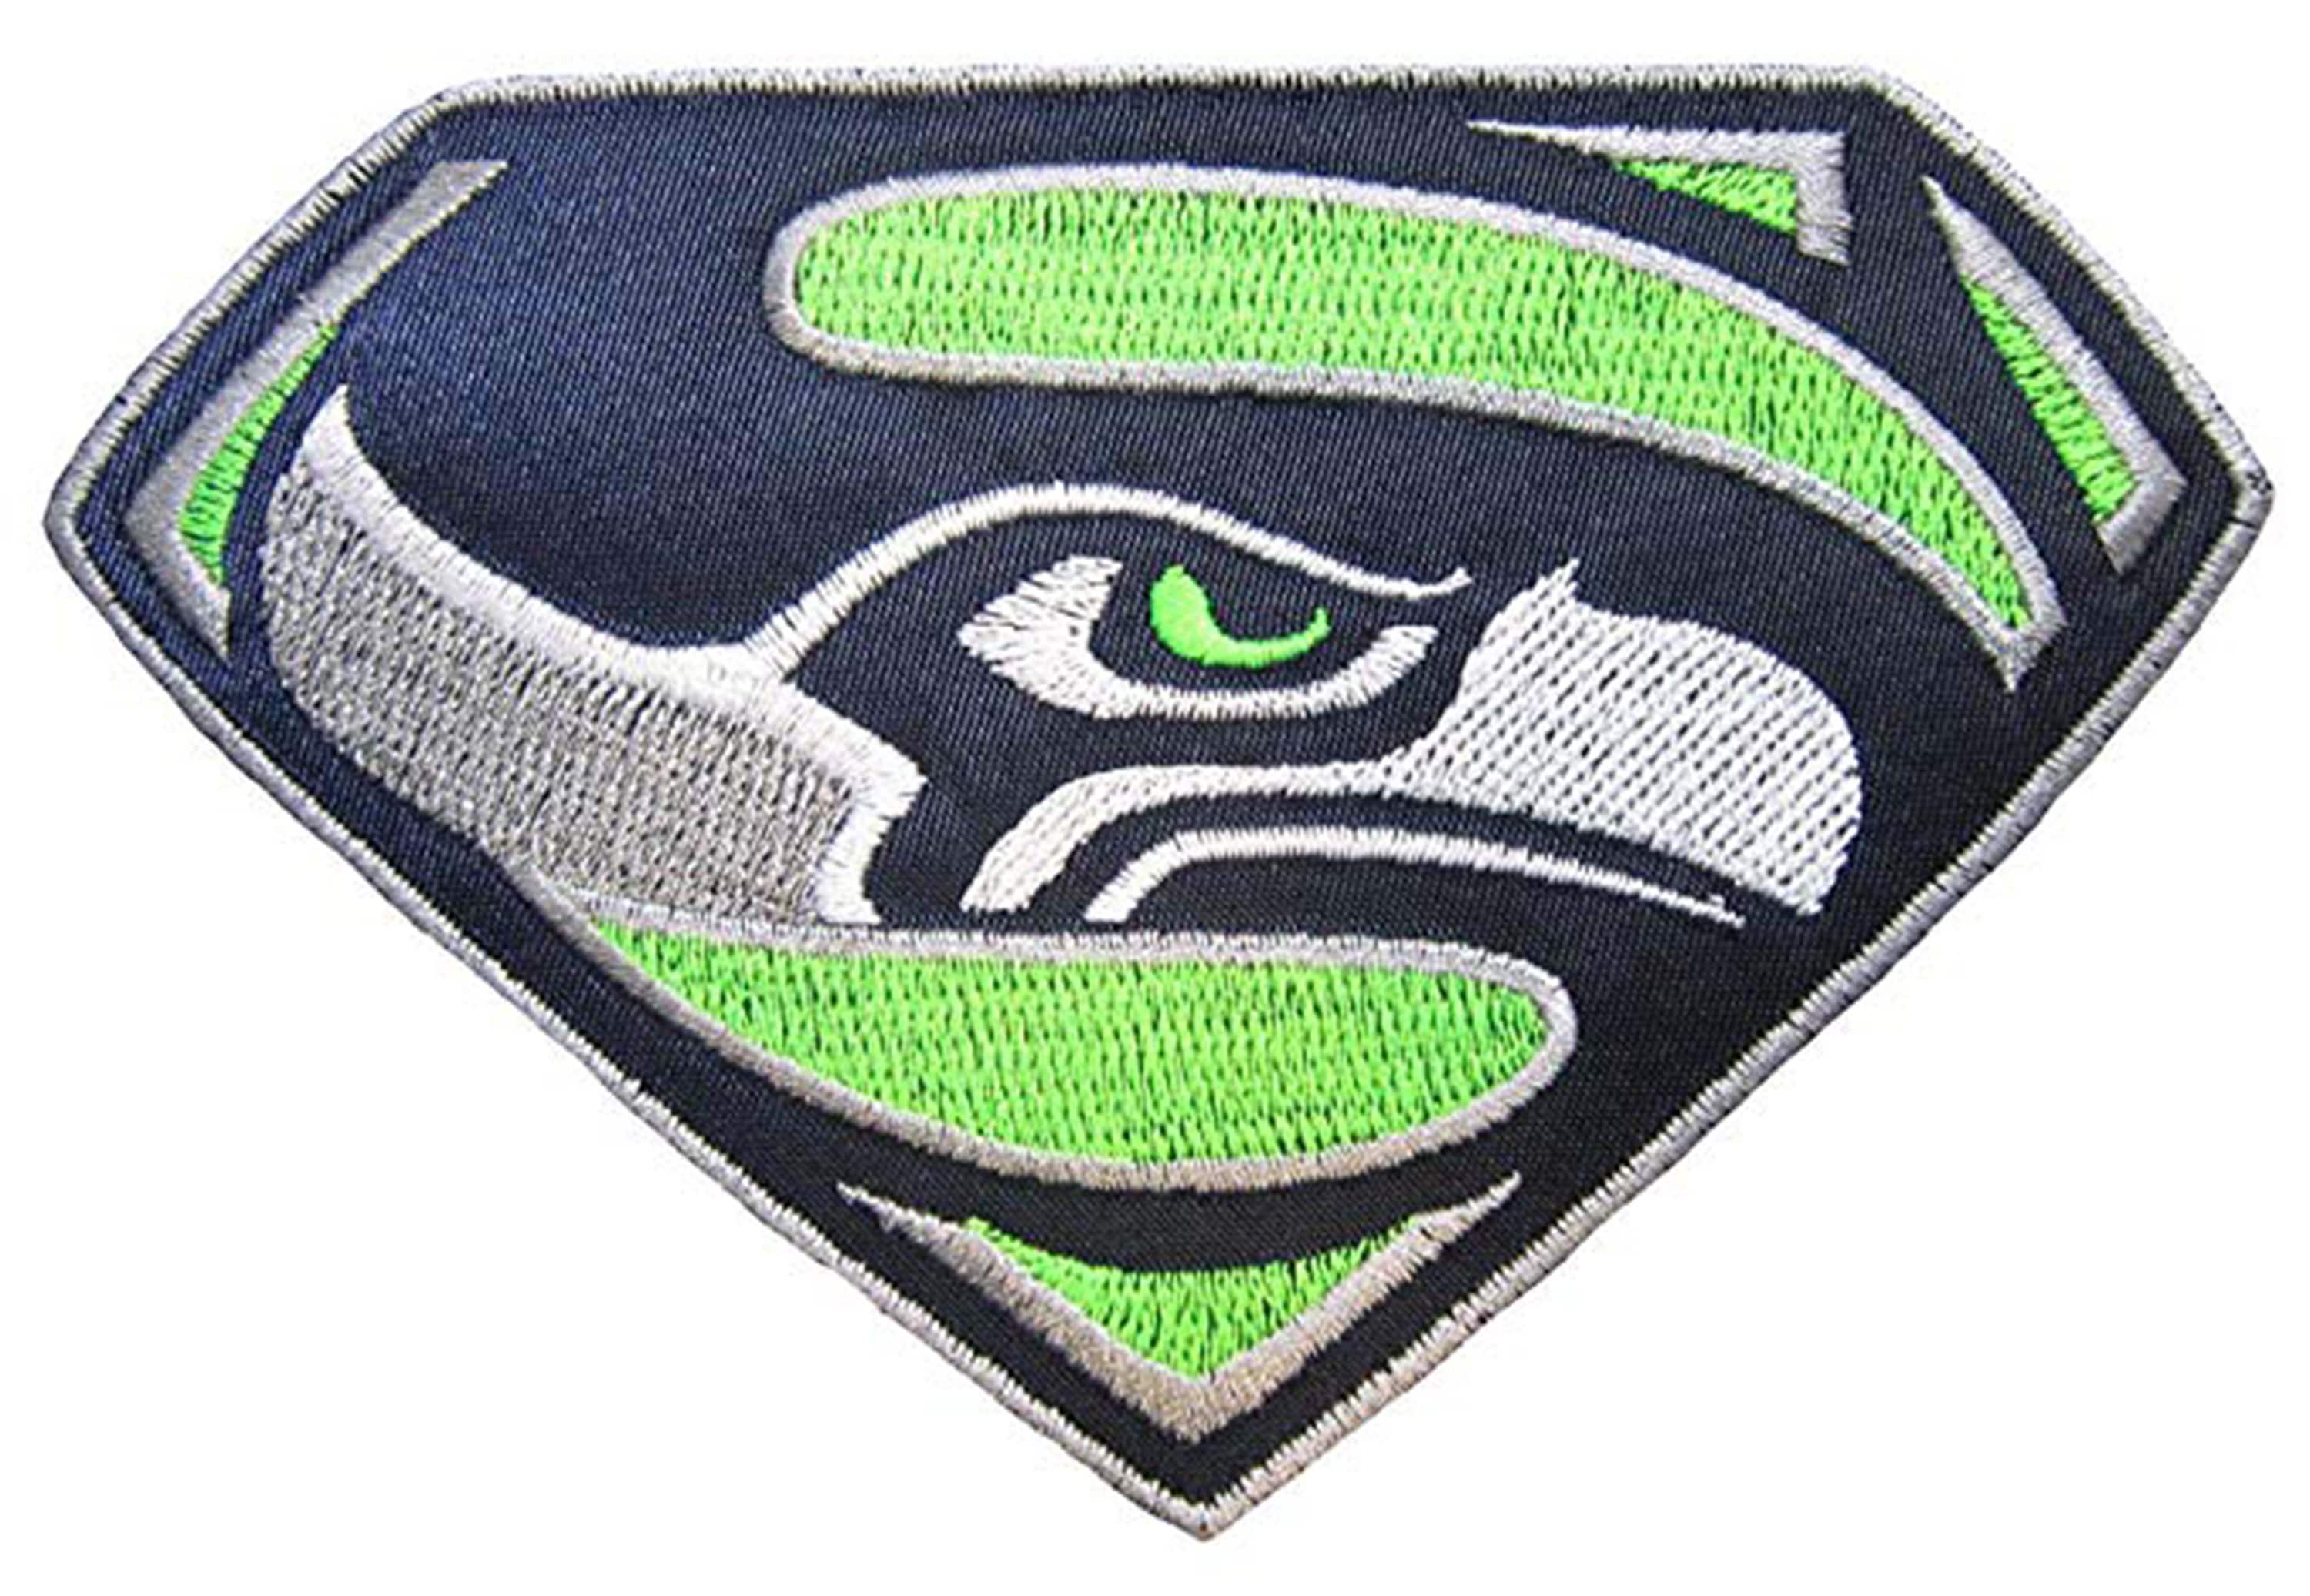 Патч Supersonic. Superhawk logo. Купить патч таков путь. Seattle logo.